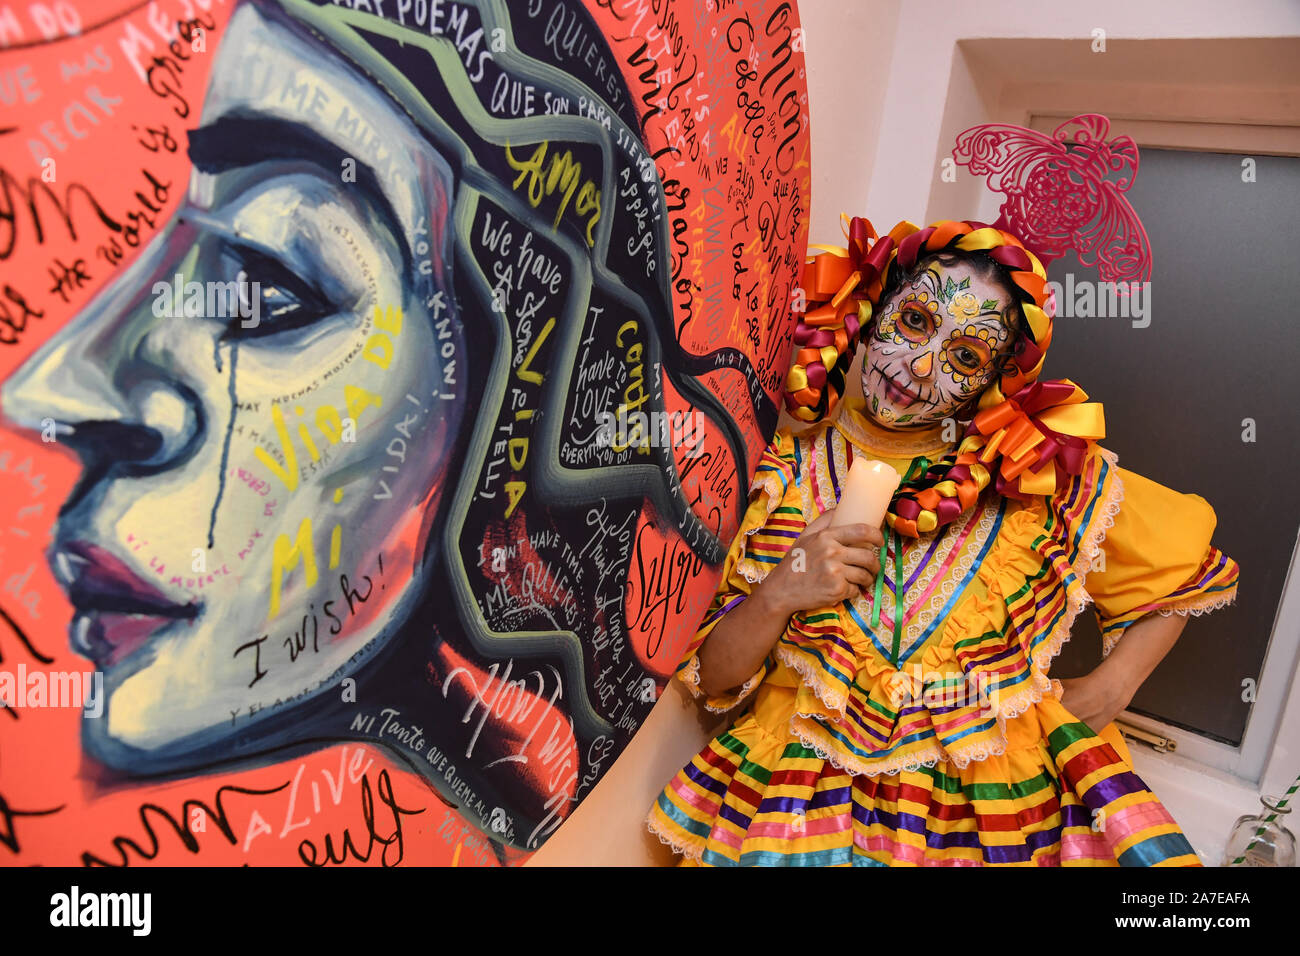 I tradizionali personaggi messicani di dia de Muertos, come la Calavera Catrina, le farfalle monarca e i teschi di zucchero, celebrano nelle strade di Soho il Patrono Tequila Day of the Dead festeggiamenti, Londra. Foto Stock